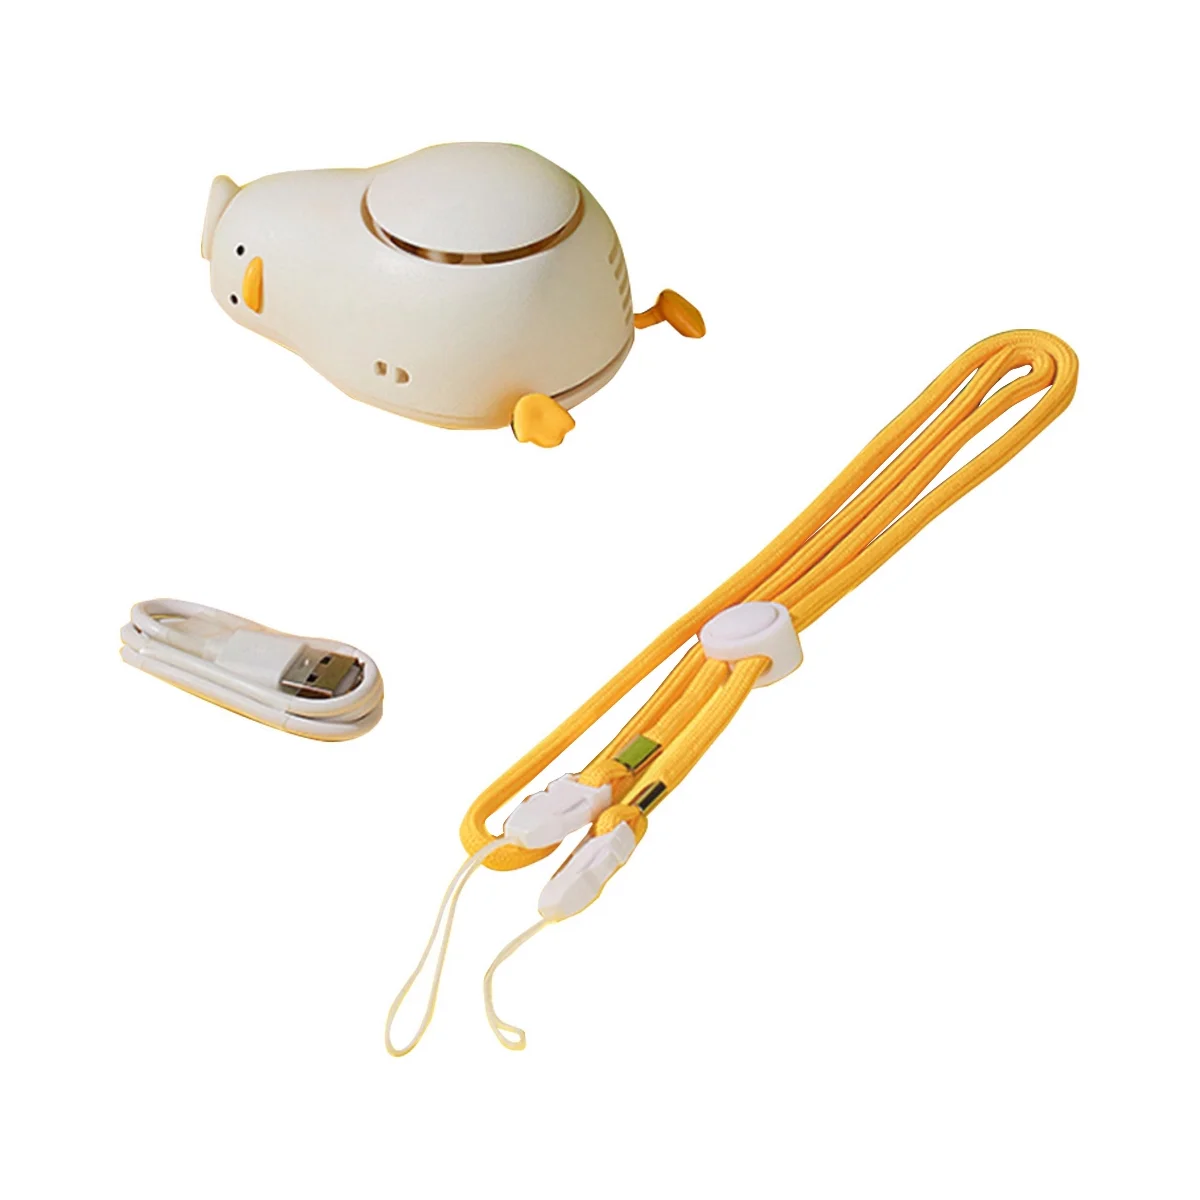 

LIE-IN-PEACE DUCK Portable Neck Fan,USB Rechargeable 3 Wind Speed Personal Fan,Mini Hanging Neck Fan